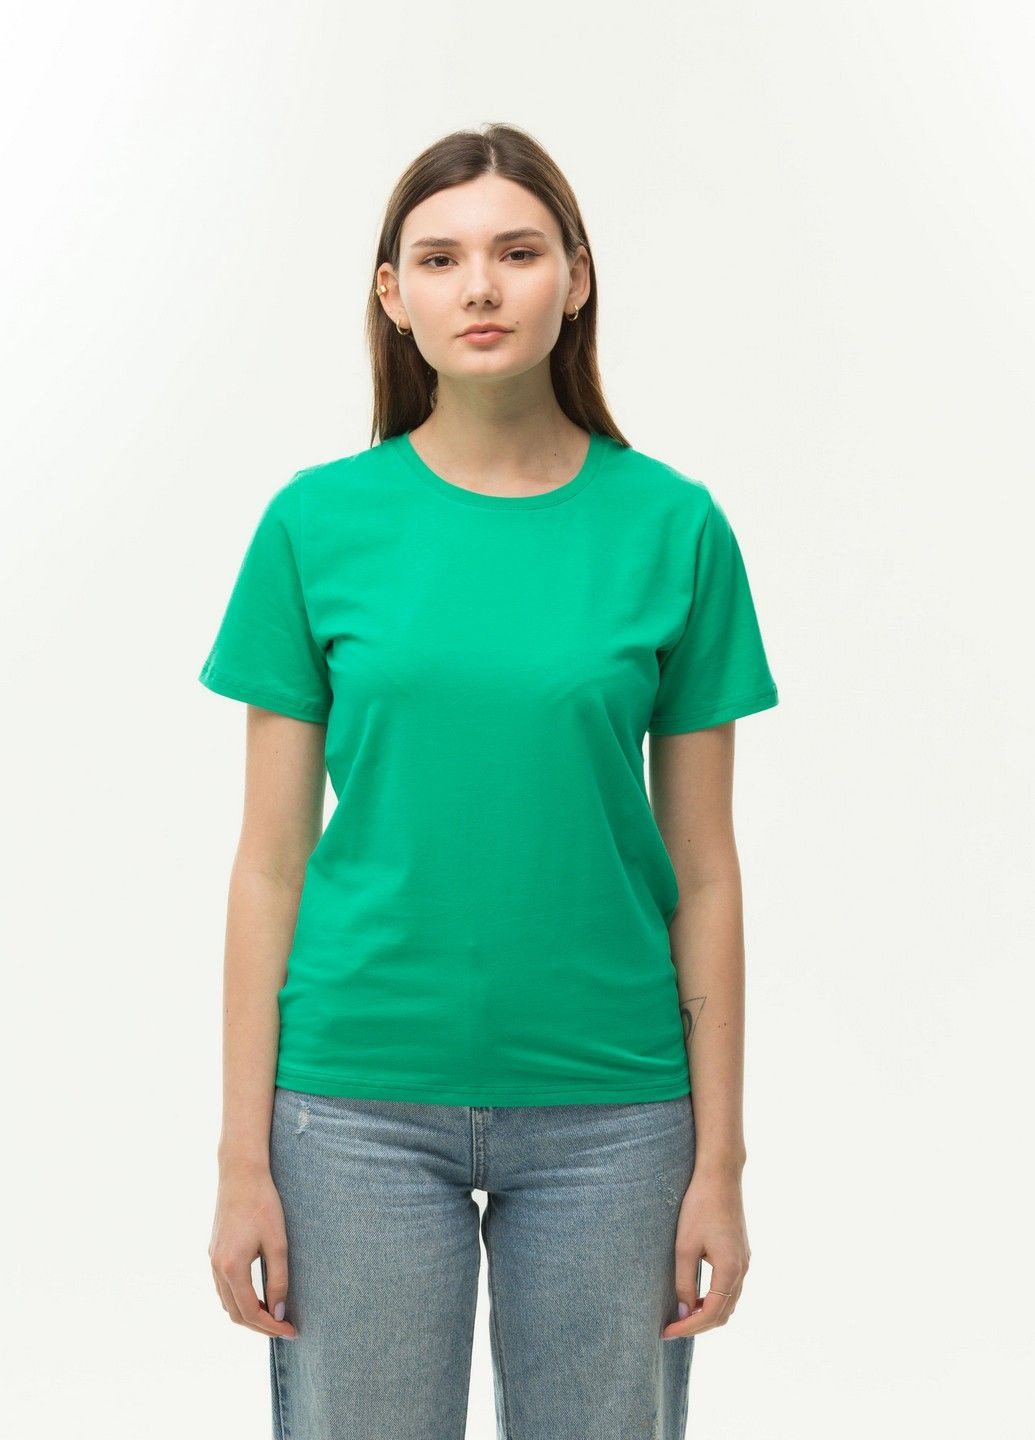 Изумрудная всесезон футболка женская Наталюкс 41-2357